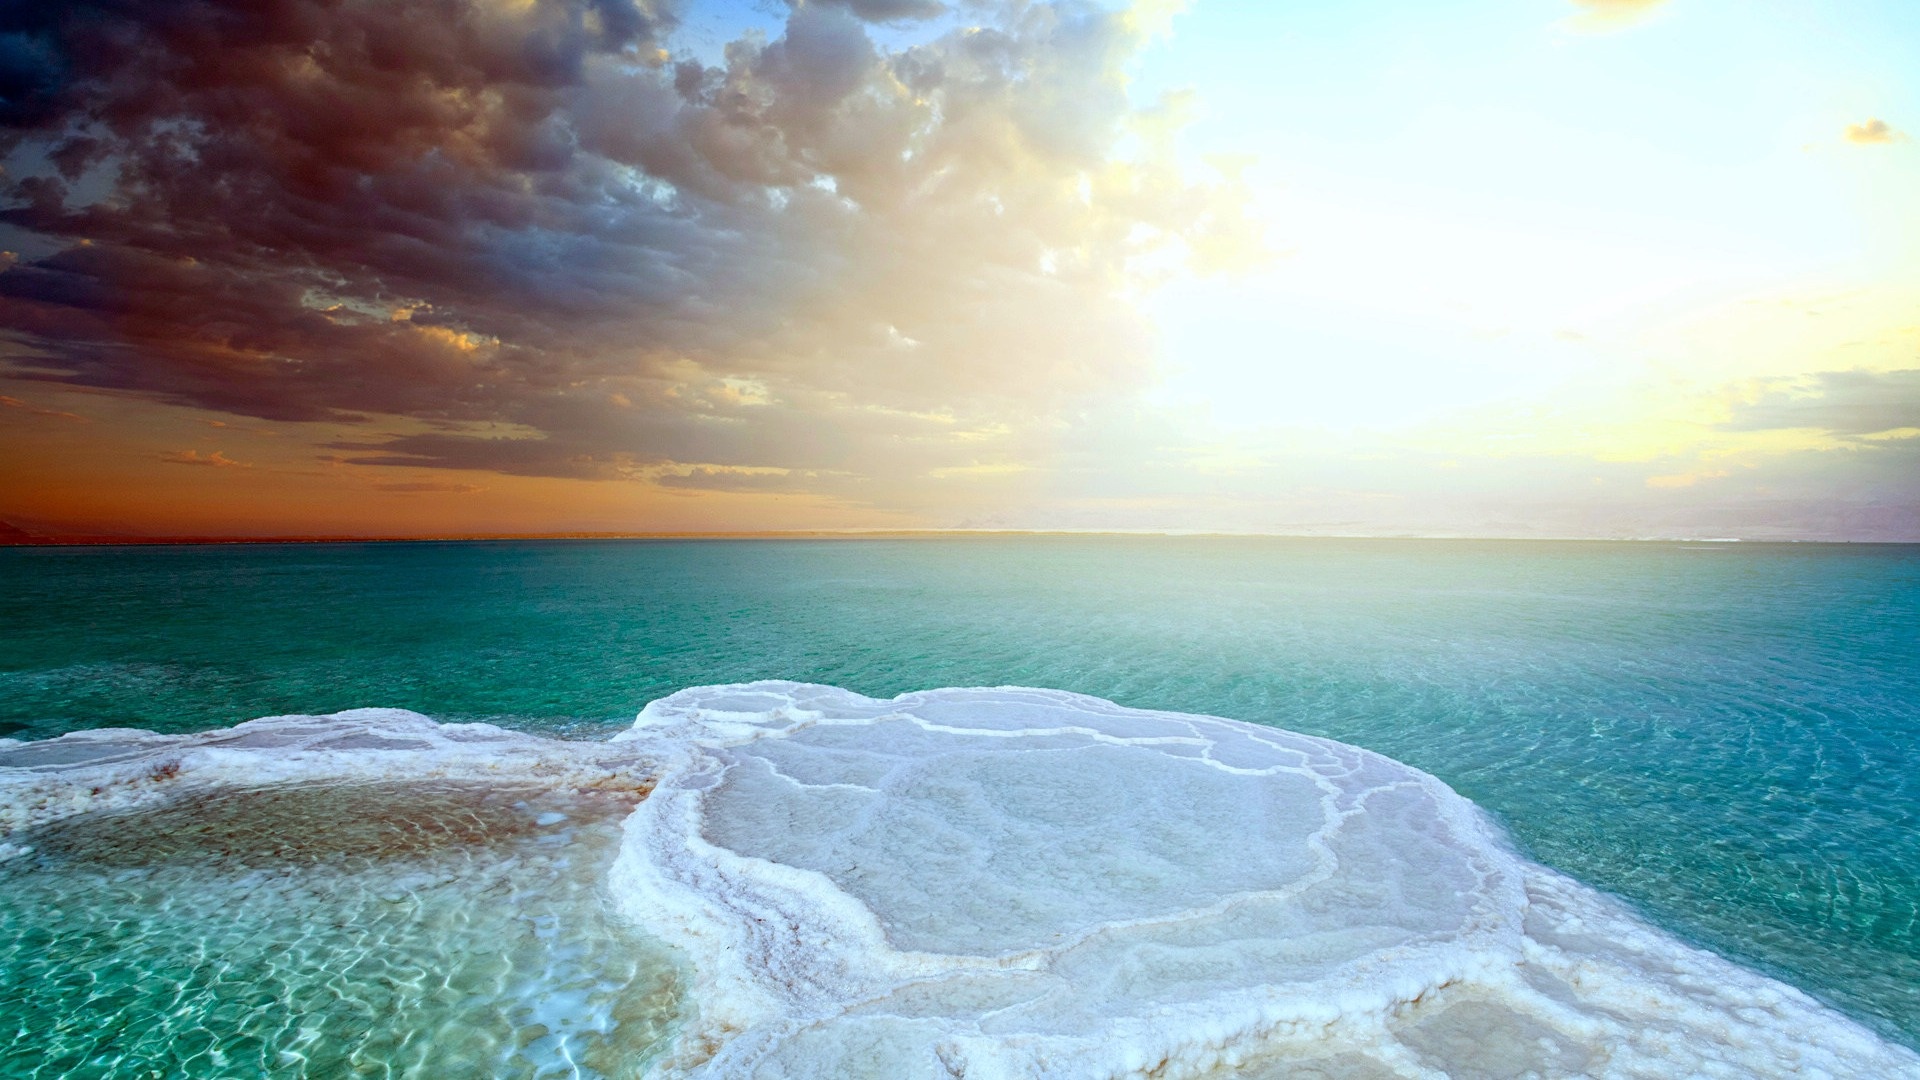 Dead Sea, Amazing views, Salt lake, Serene atmosphere, 1920x1080 Full HD Desktop